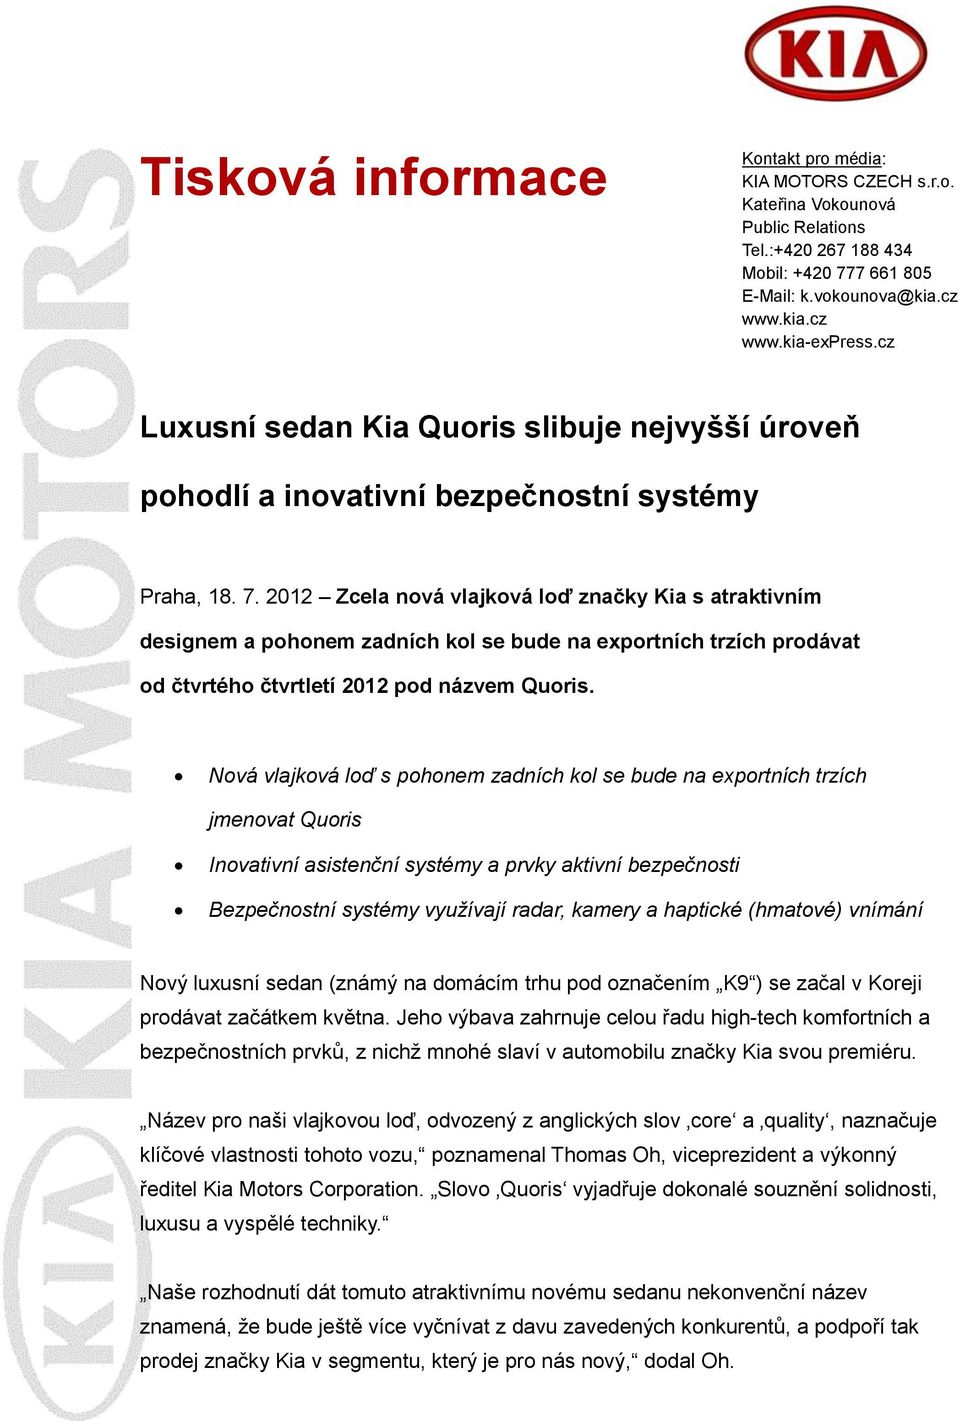 2012 Zcela nová vlajková loď značky Kia s atraktivním designem a pohonem zadních kol se bude na exportních trzích prodávat od čtvrtého čtvrtletí 2012 pod názvem Quoris.